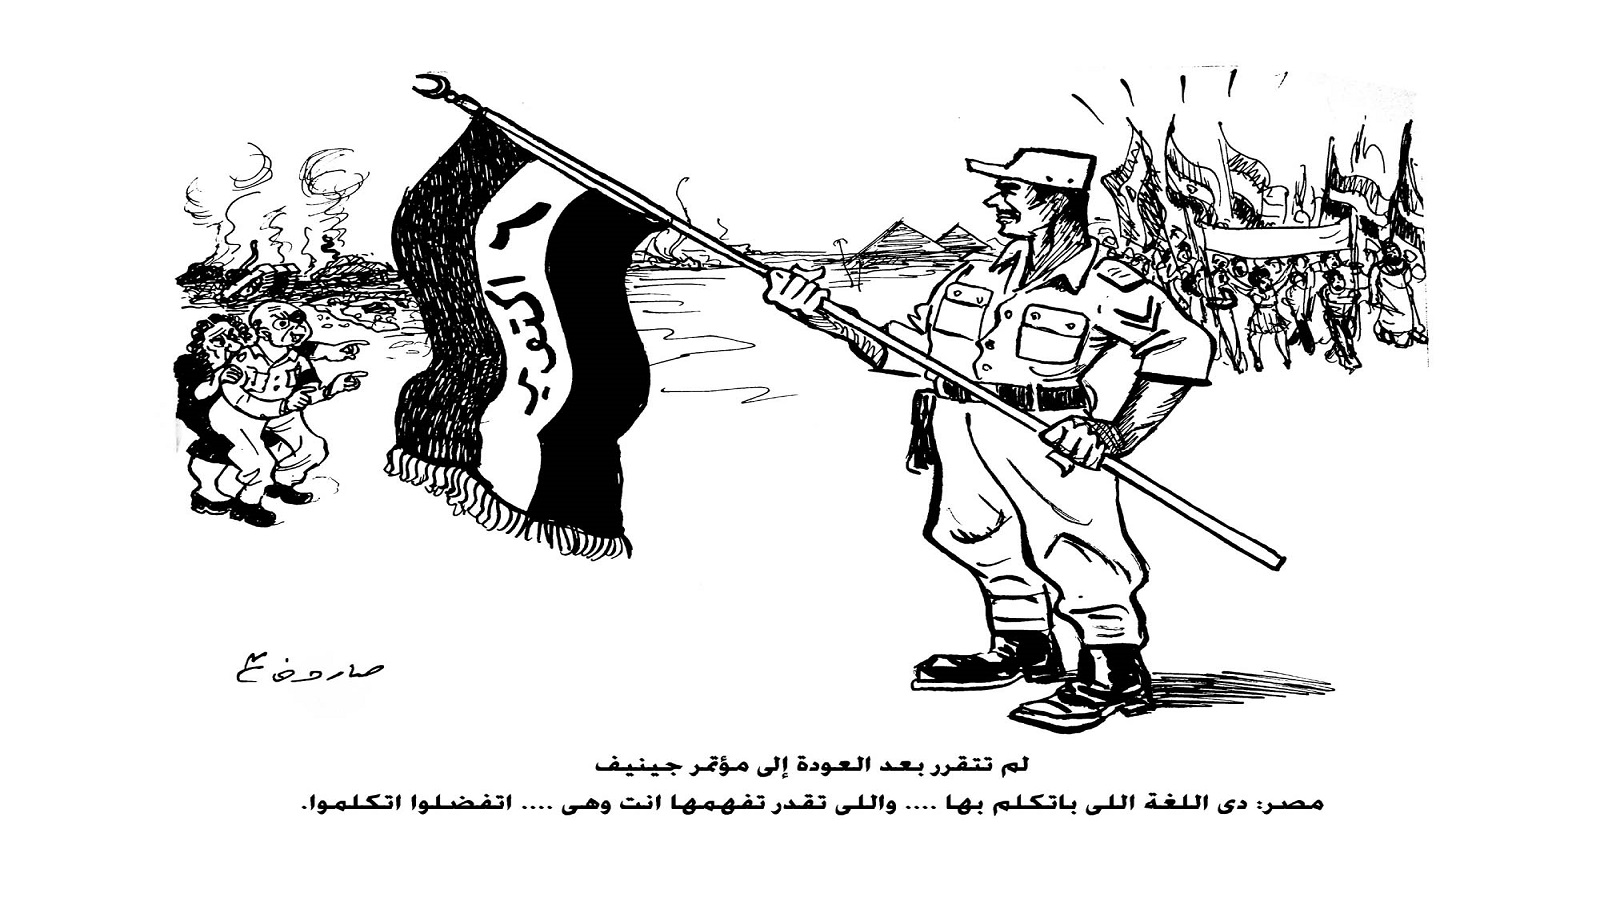 الكاريكاتير المصري.. واحتمالاته الباهتة الثلاث